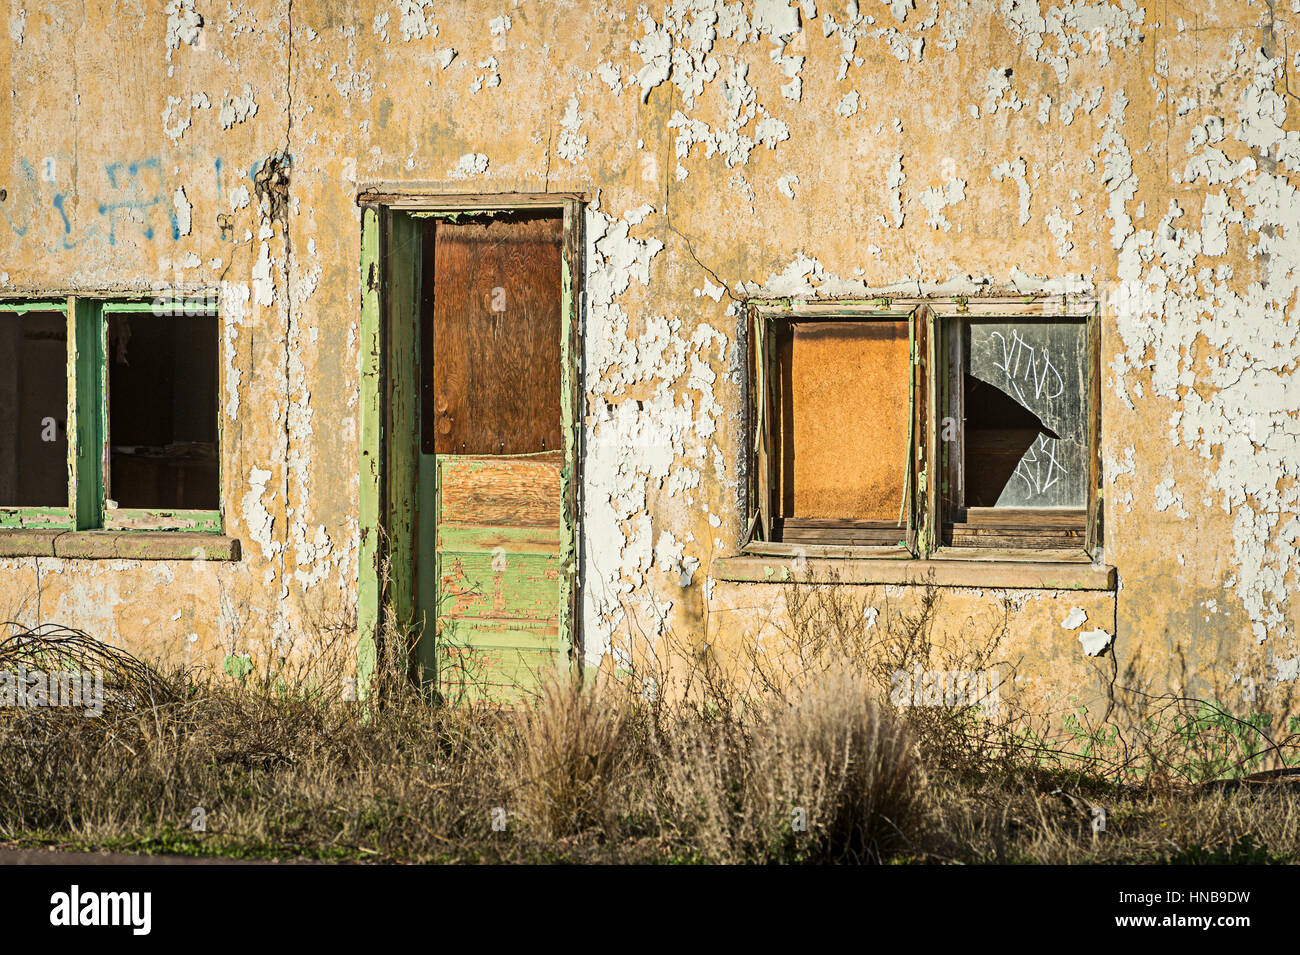 Abandoned Building With Peeling Paint, Arizona USA Stock Photo